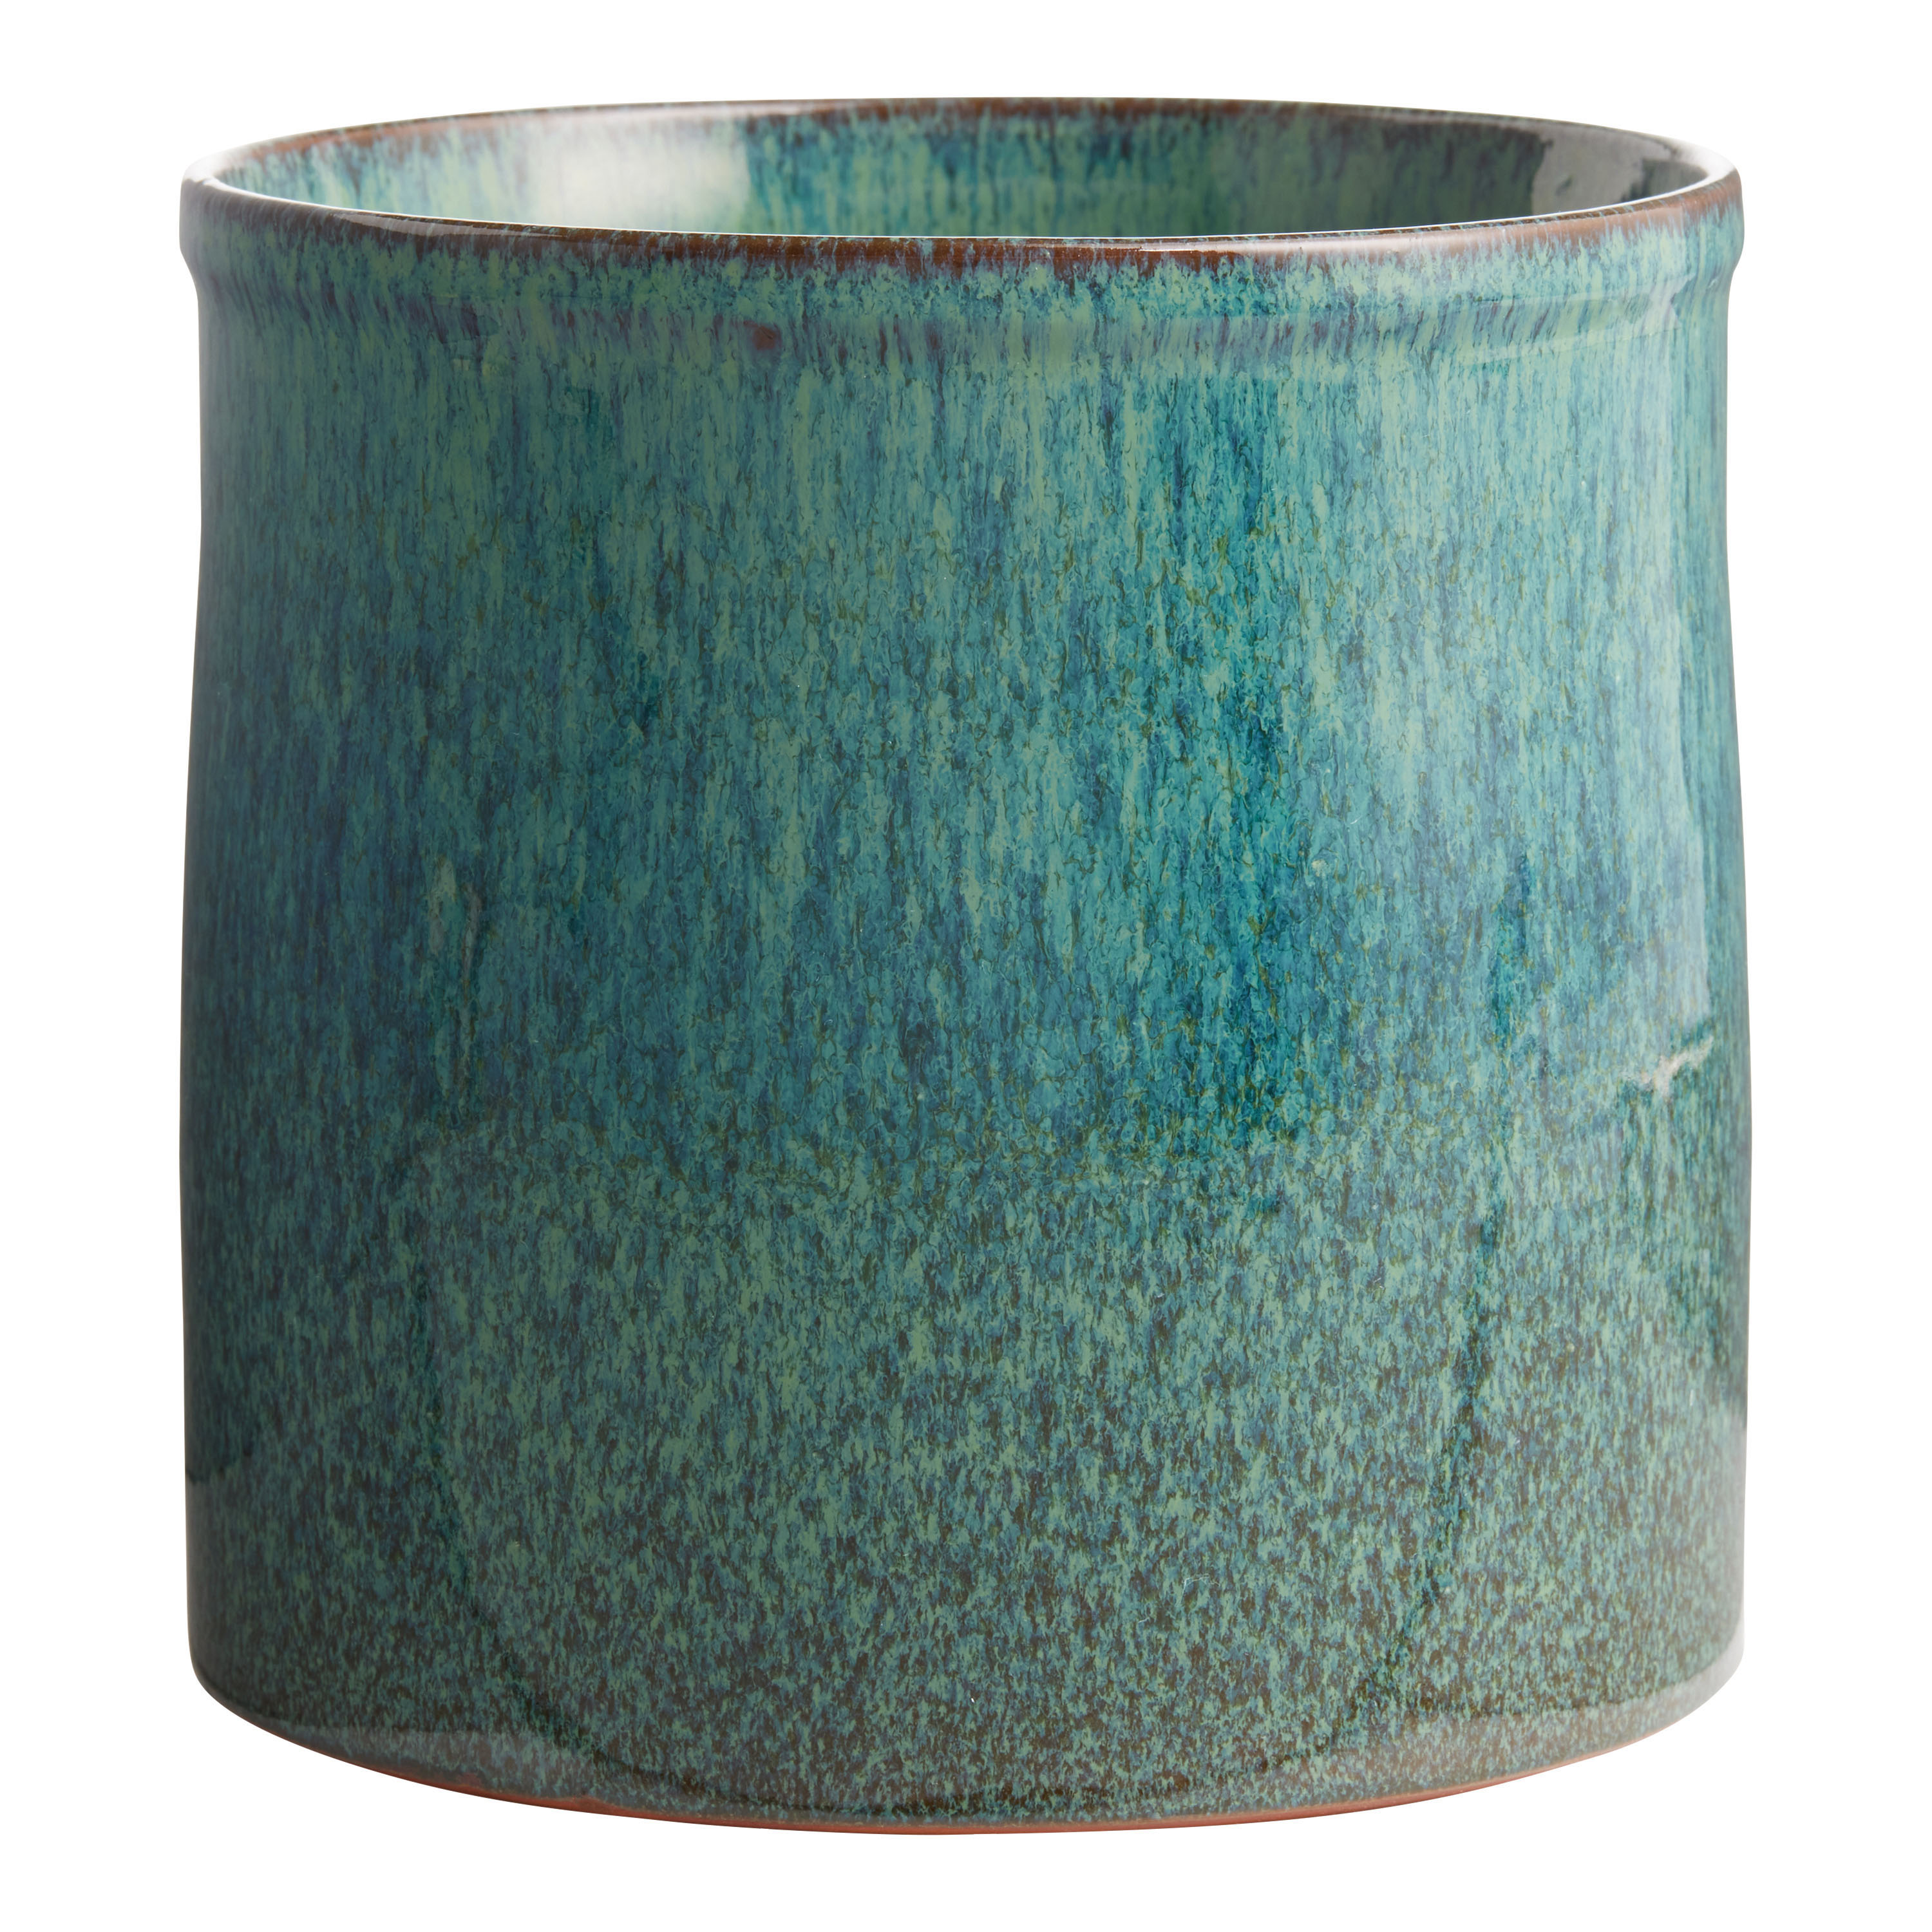 Peacock Blue Speckled Reactive Glaze Ceramic Utensil Holder - World Market